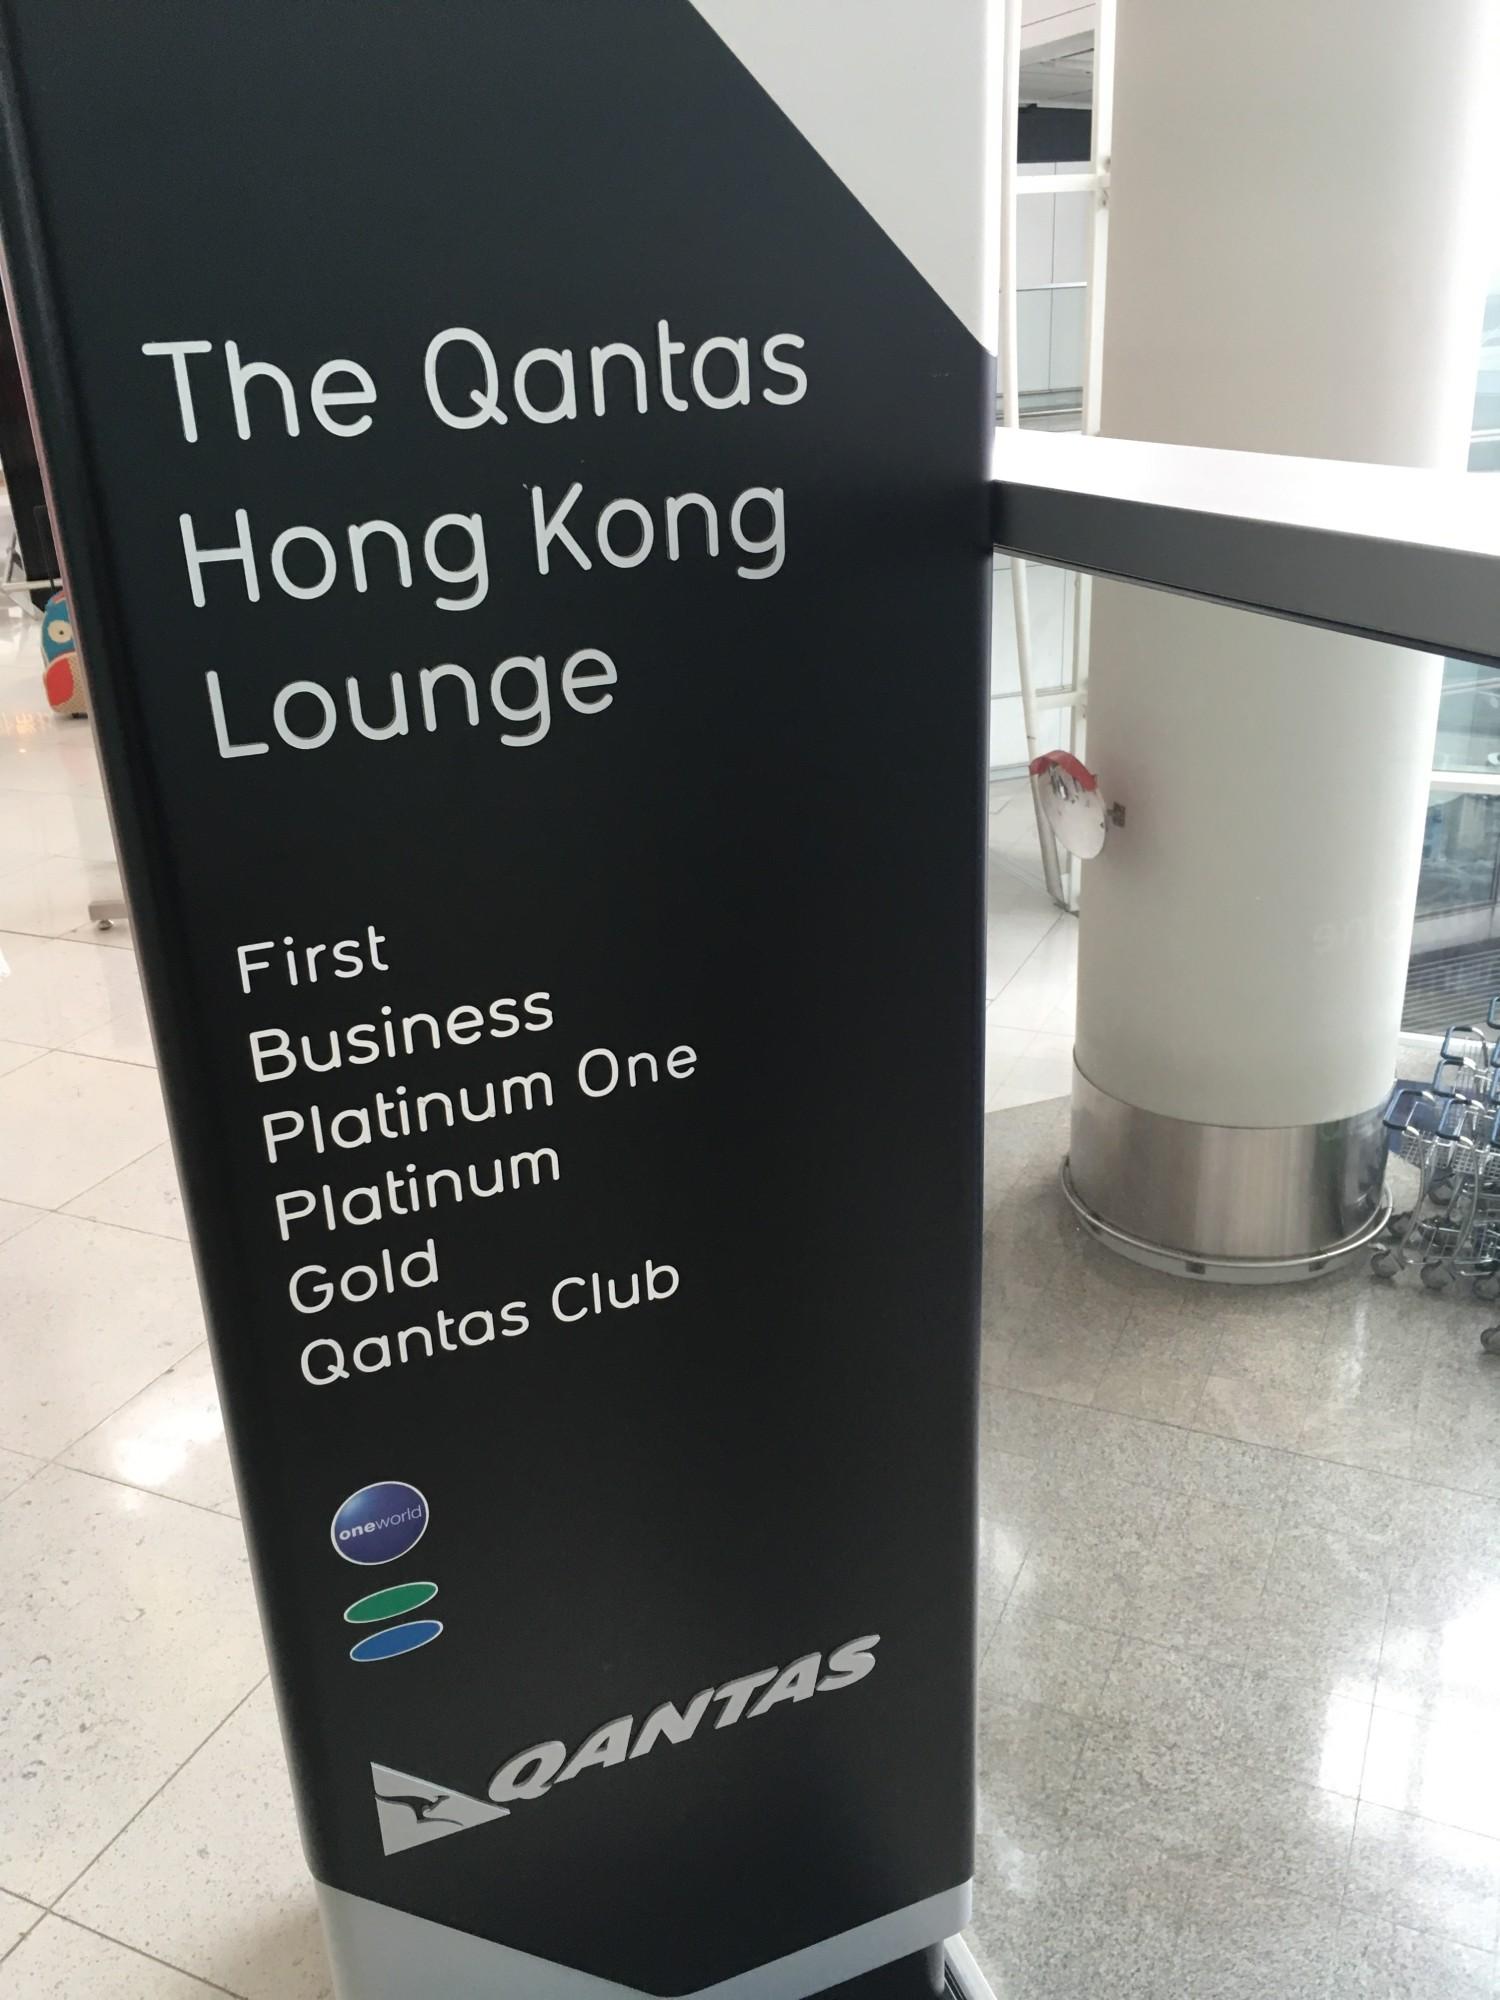 The Qantas Hong Kong Lounge image 79 of 99